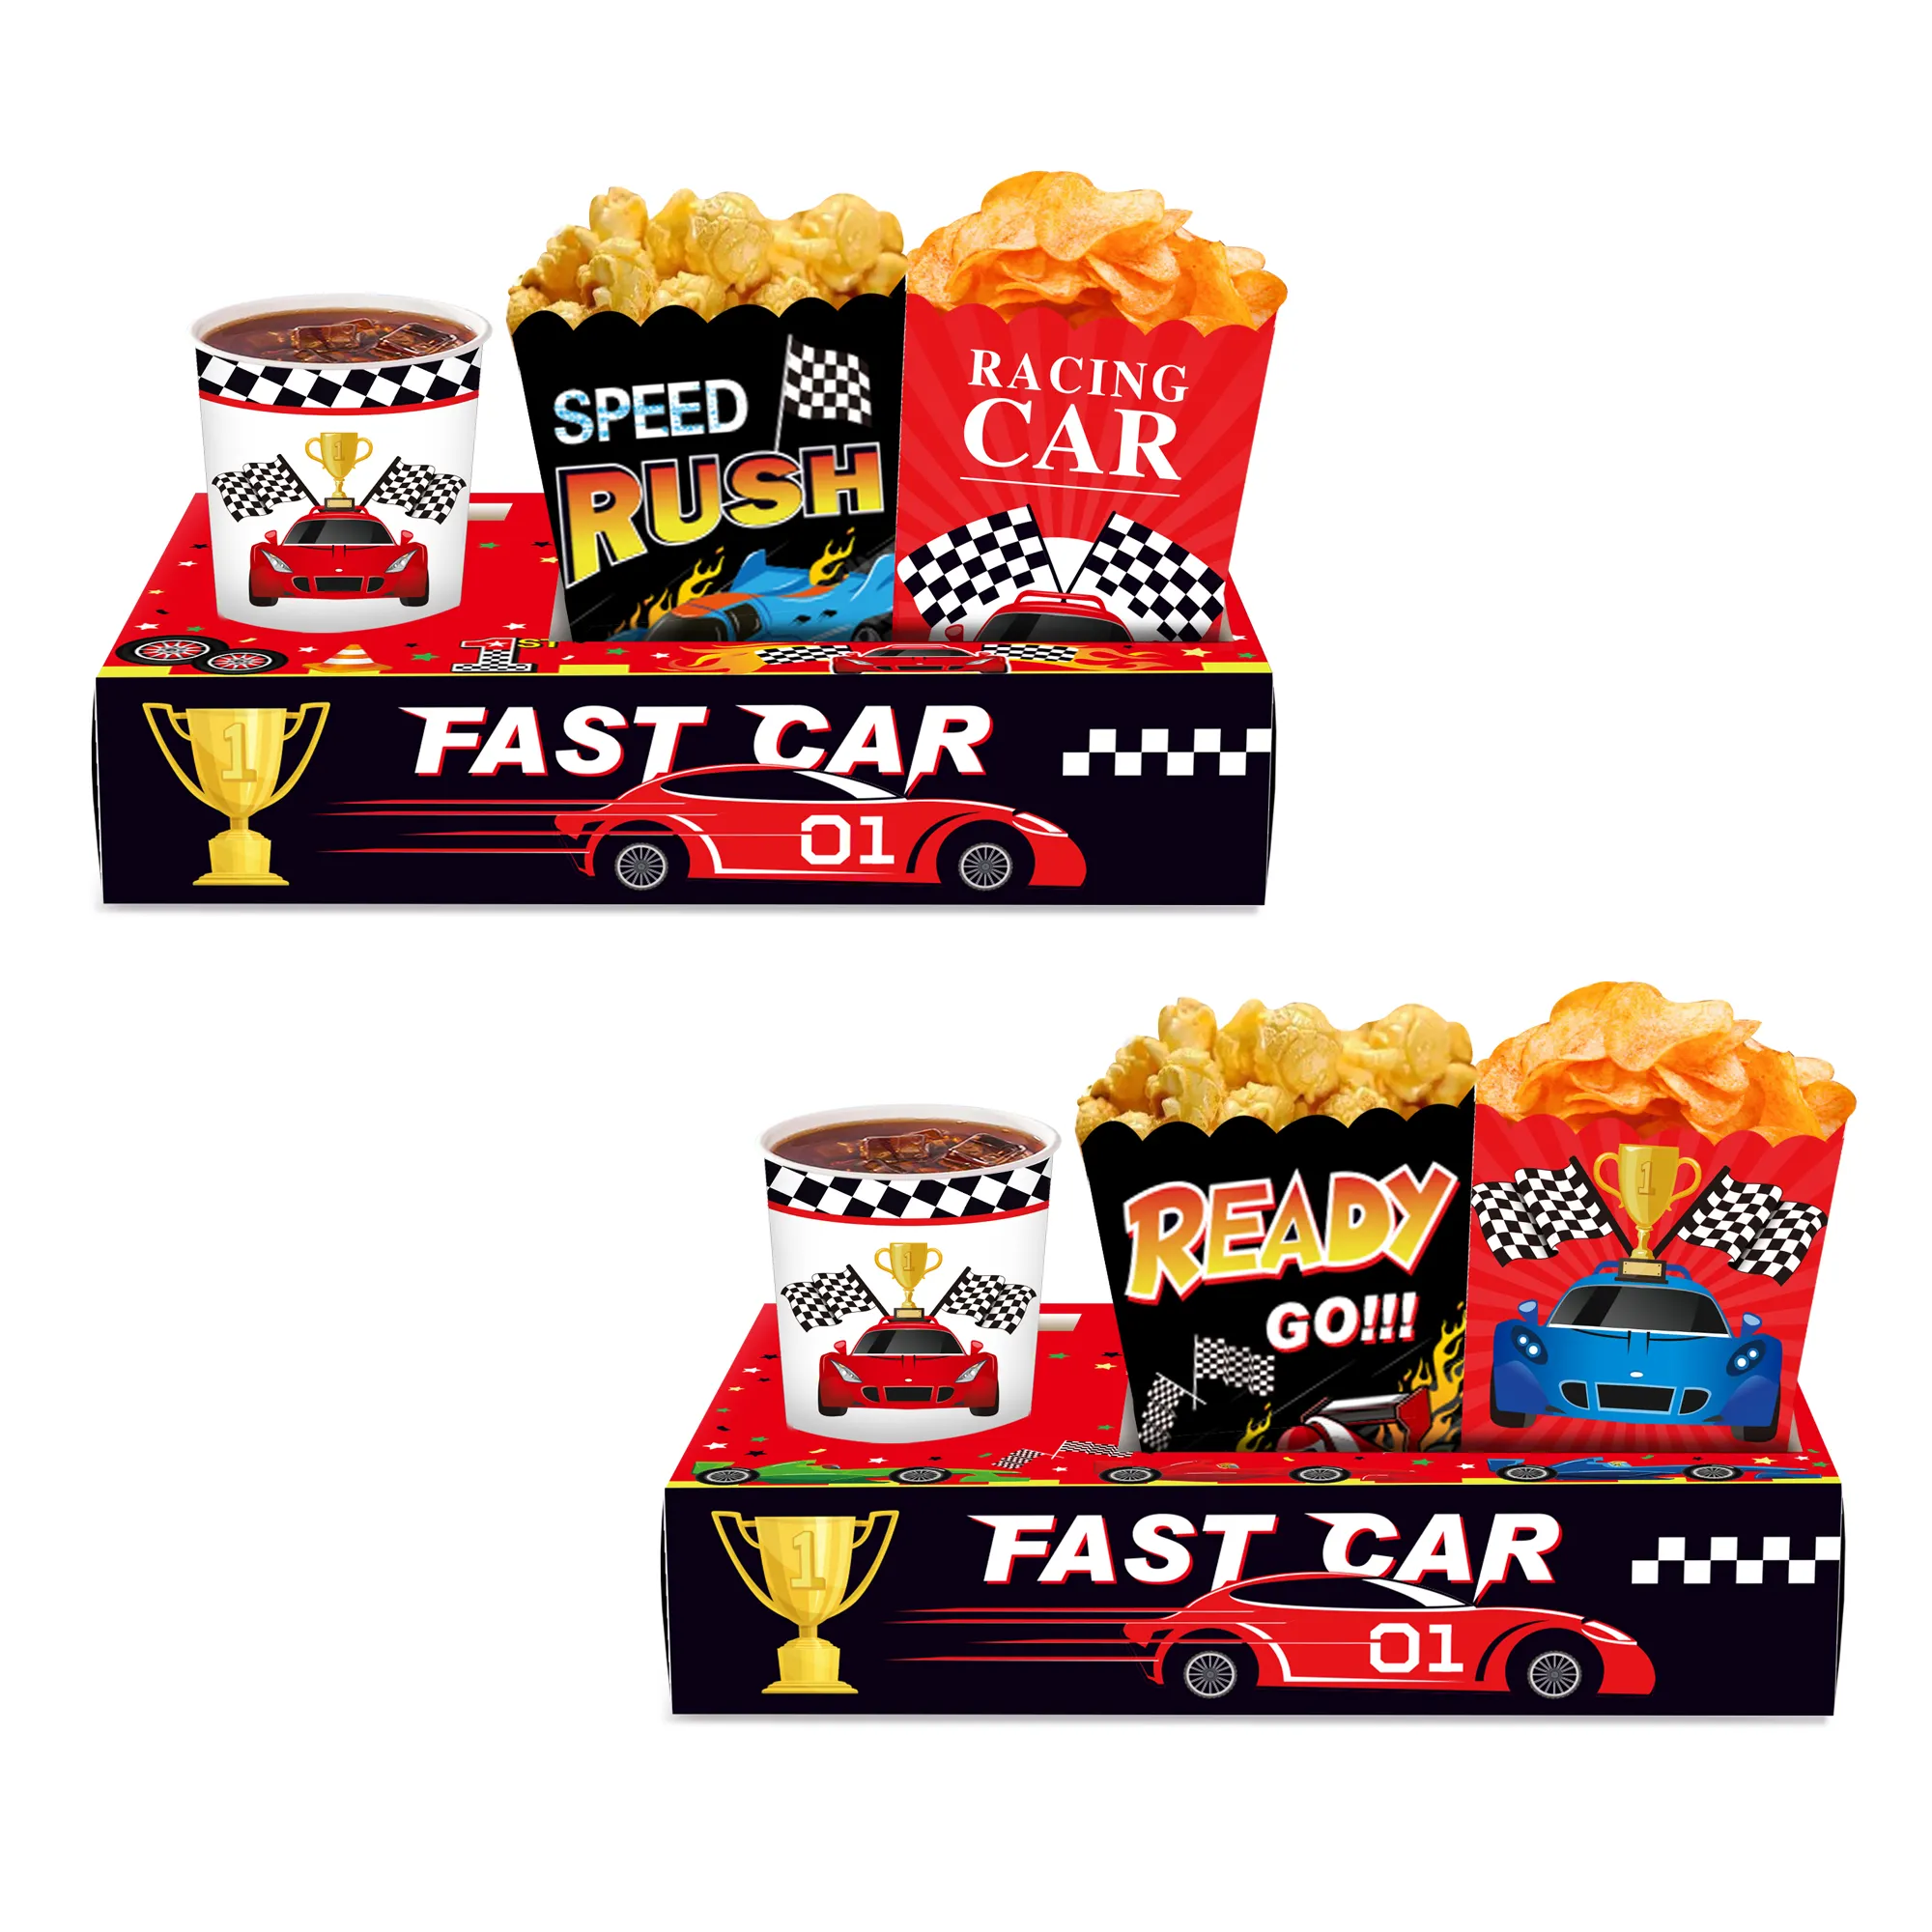 Xindeli KY004 रेसिंग कार नाश्ता ट्रे पॉपकॉर्न कैंडी खाद्य पेय धारक मूवी थियेटर के लिए कागज बक्से रेसिंग बच्चों पार्टी की आपूर्ति